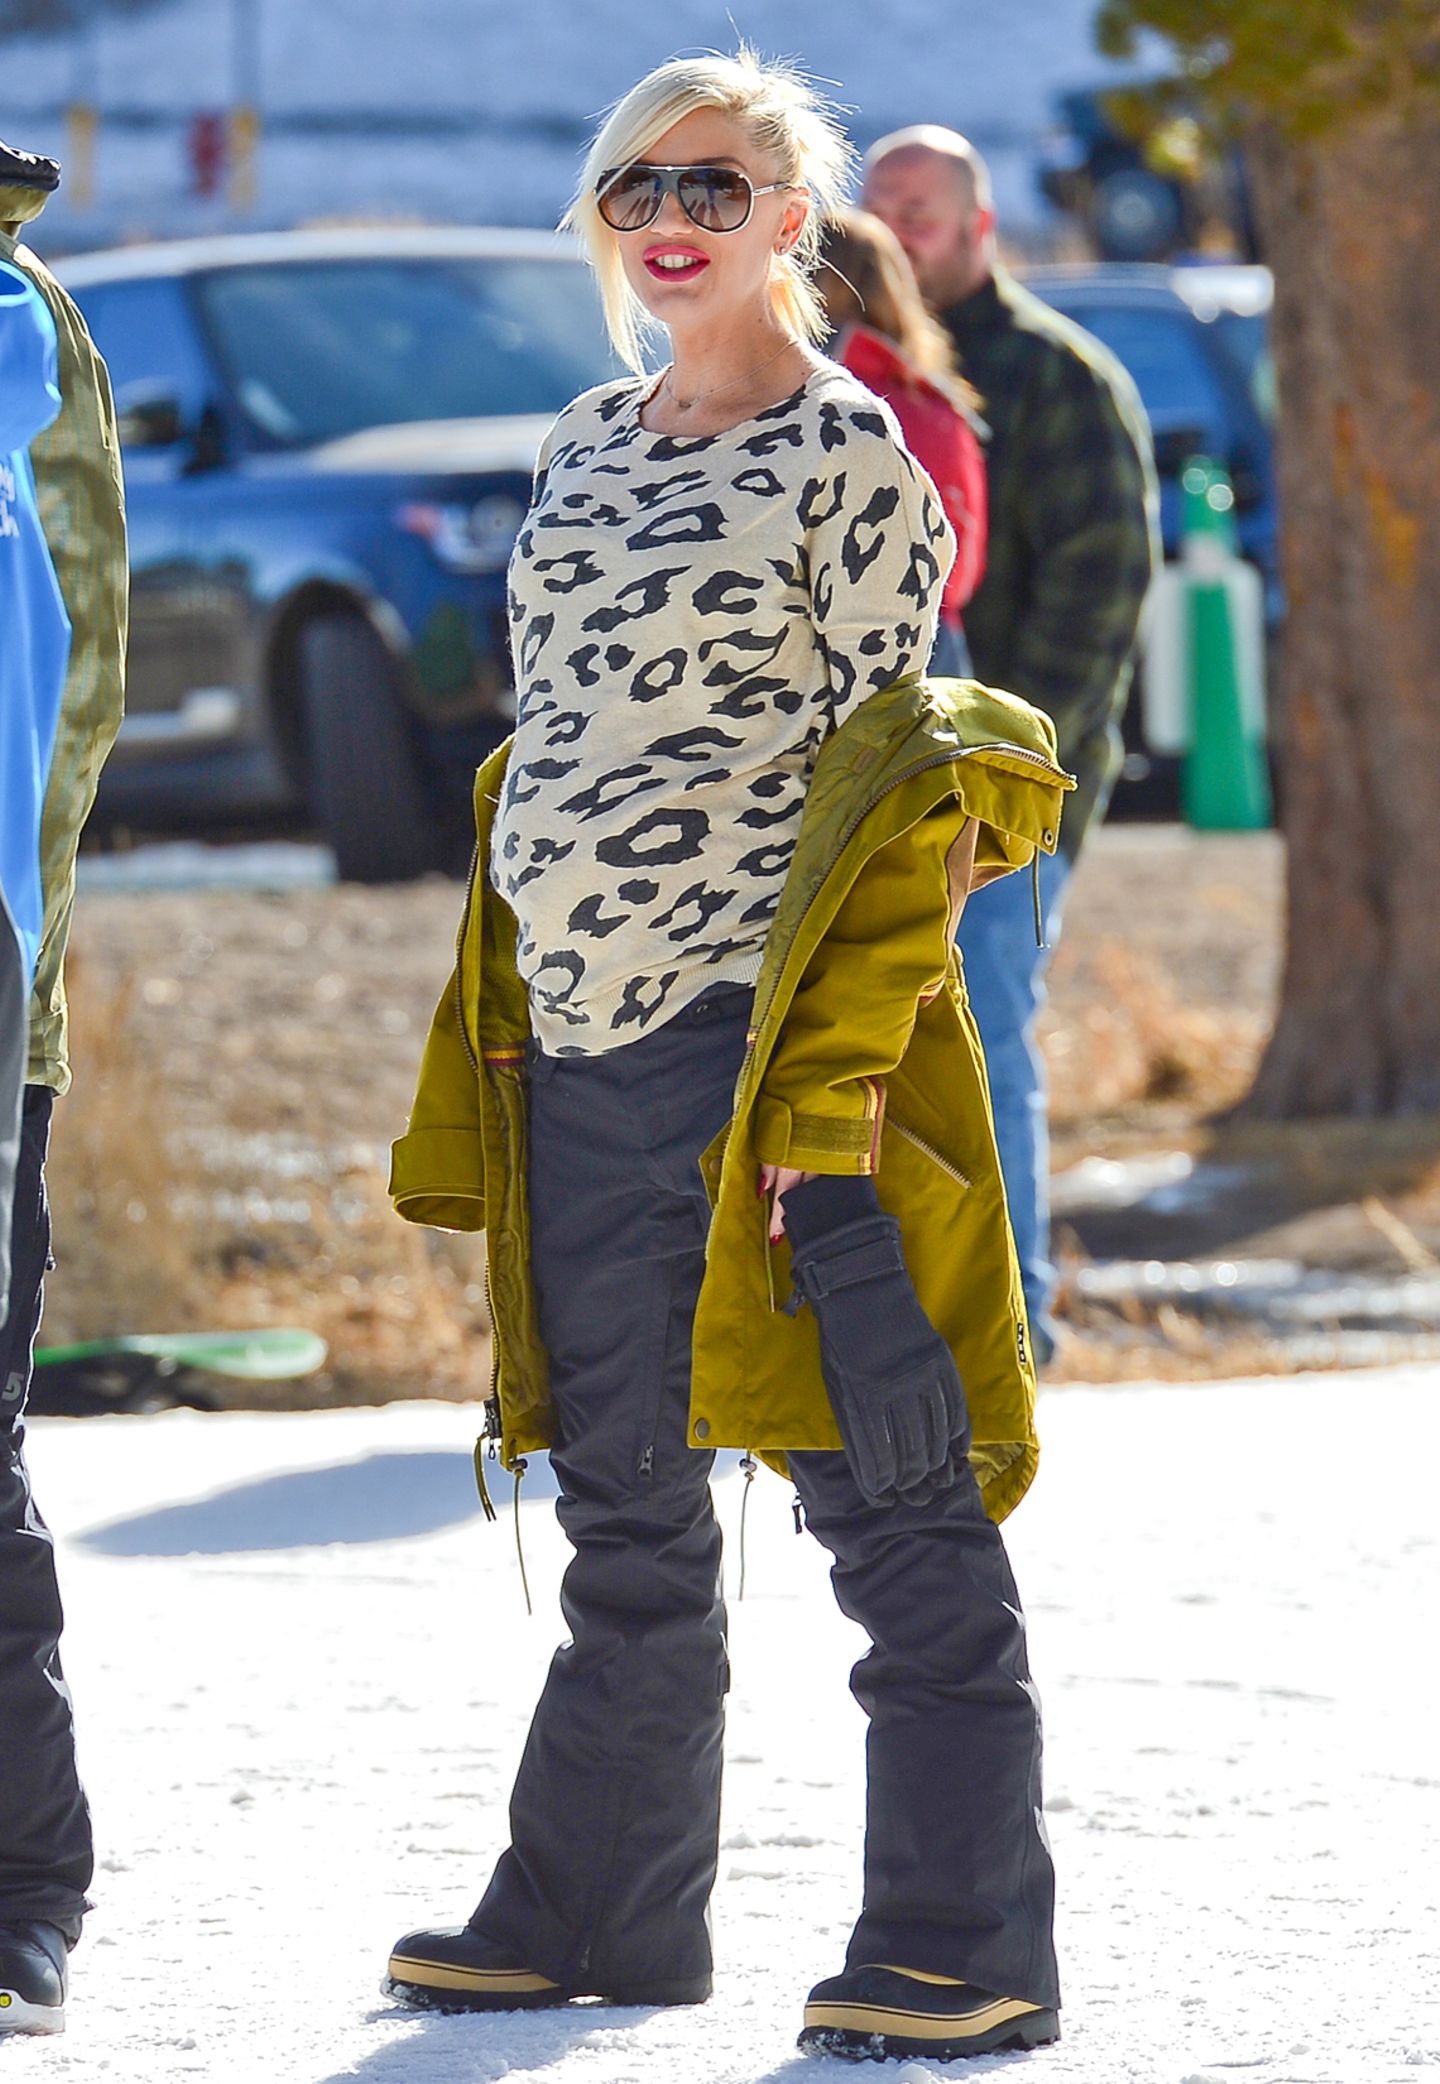 Auch hochschwanger hat Gwen Stefani noch Spaß im Ski-Urlaub. Mit auffälligem Leo-Print-Pullover und der senfgelb-grünlichen Winterjacke ist sie dabei auch ein echter Blickfang.